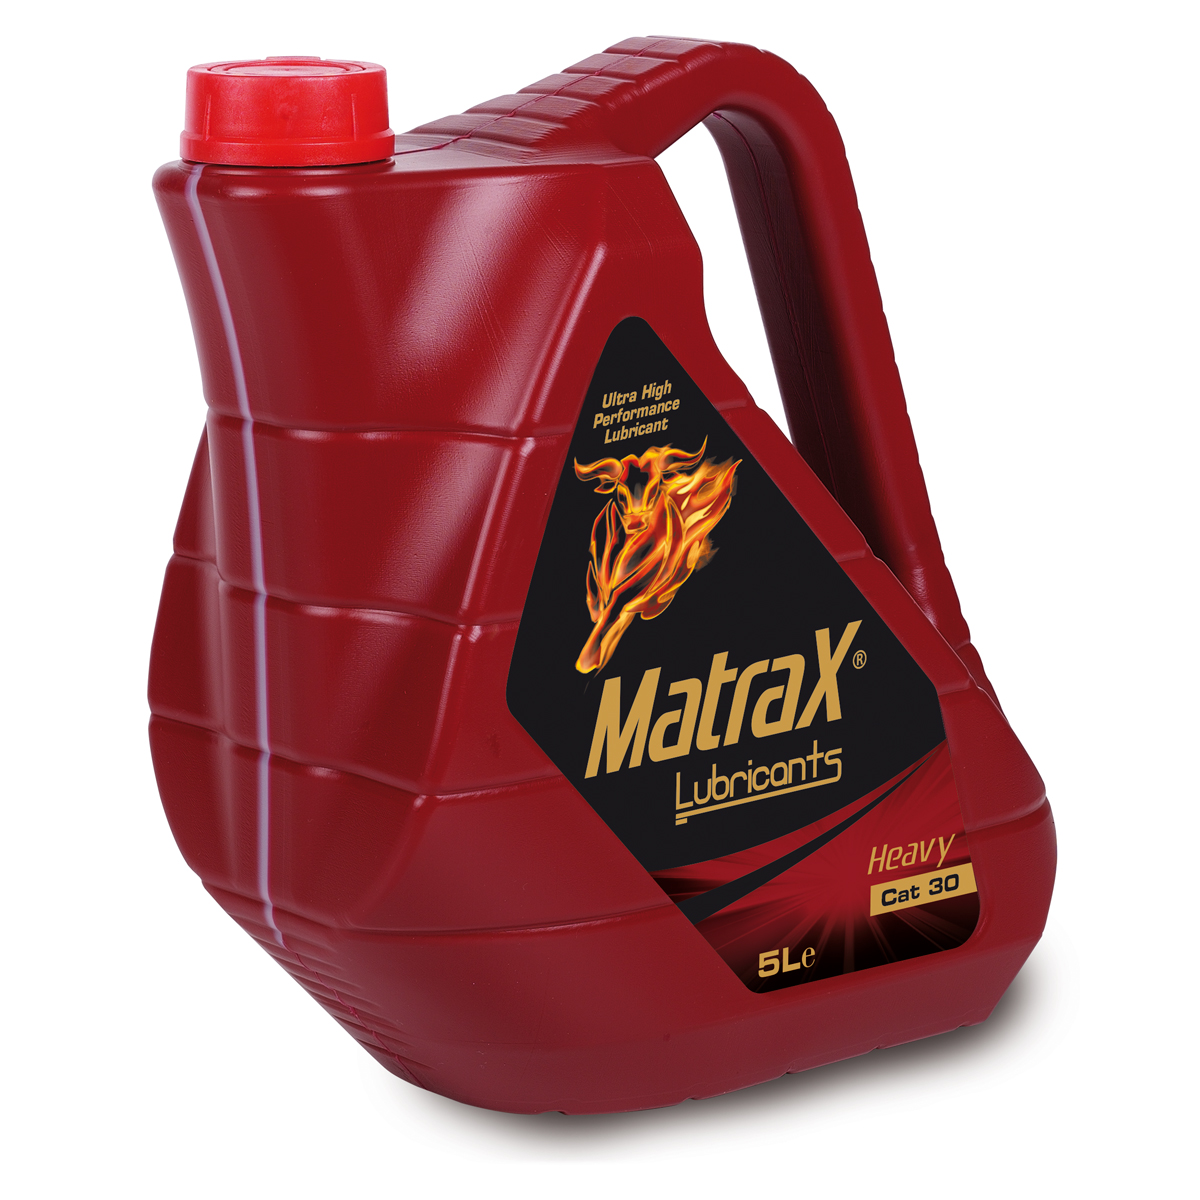 matrax-lubricants-heavy-cat-30-5l